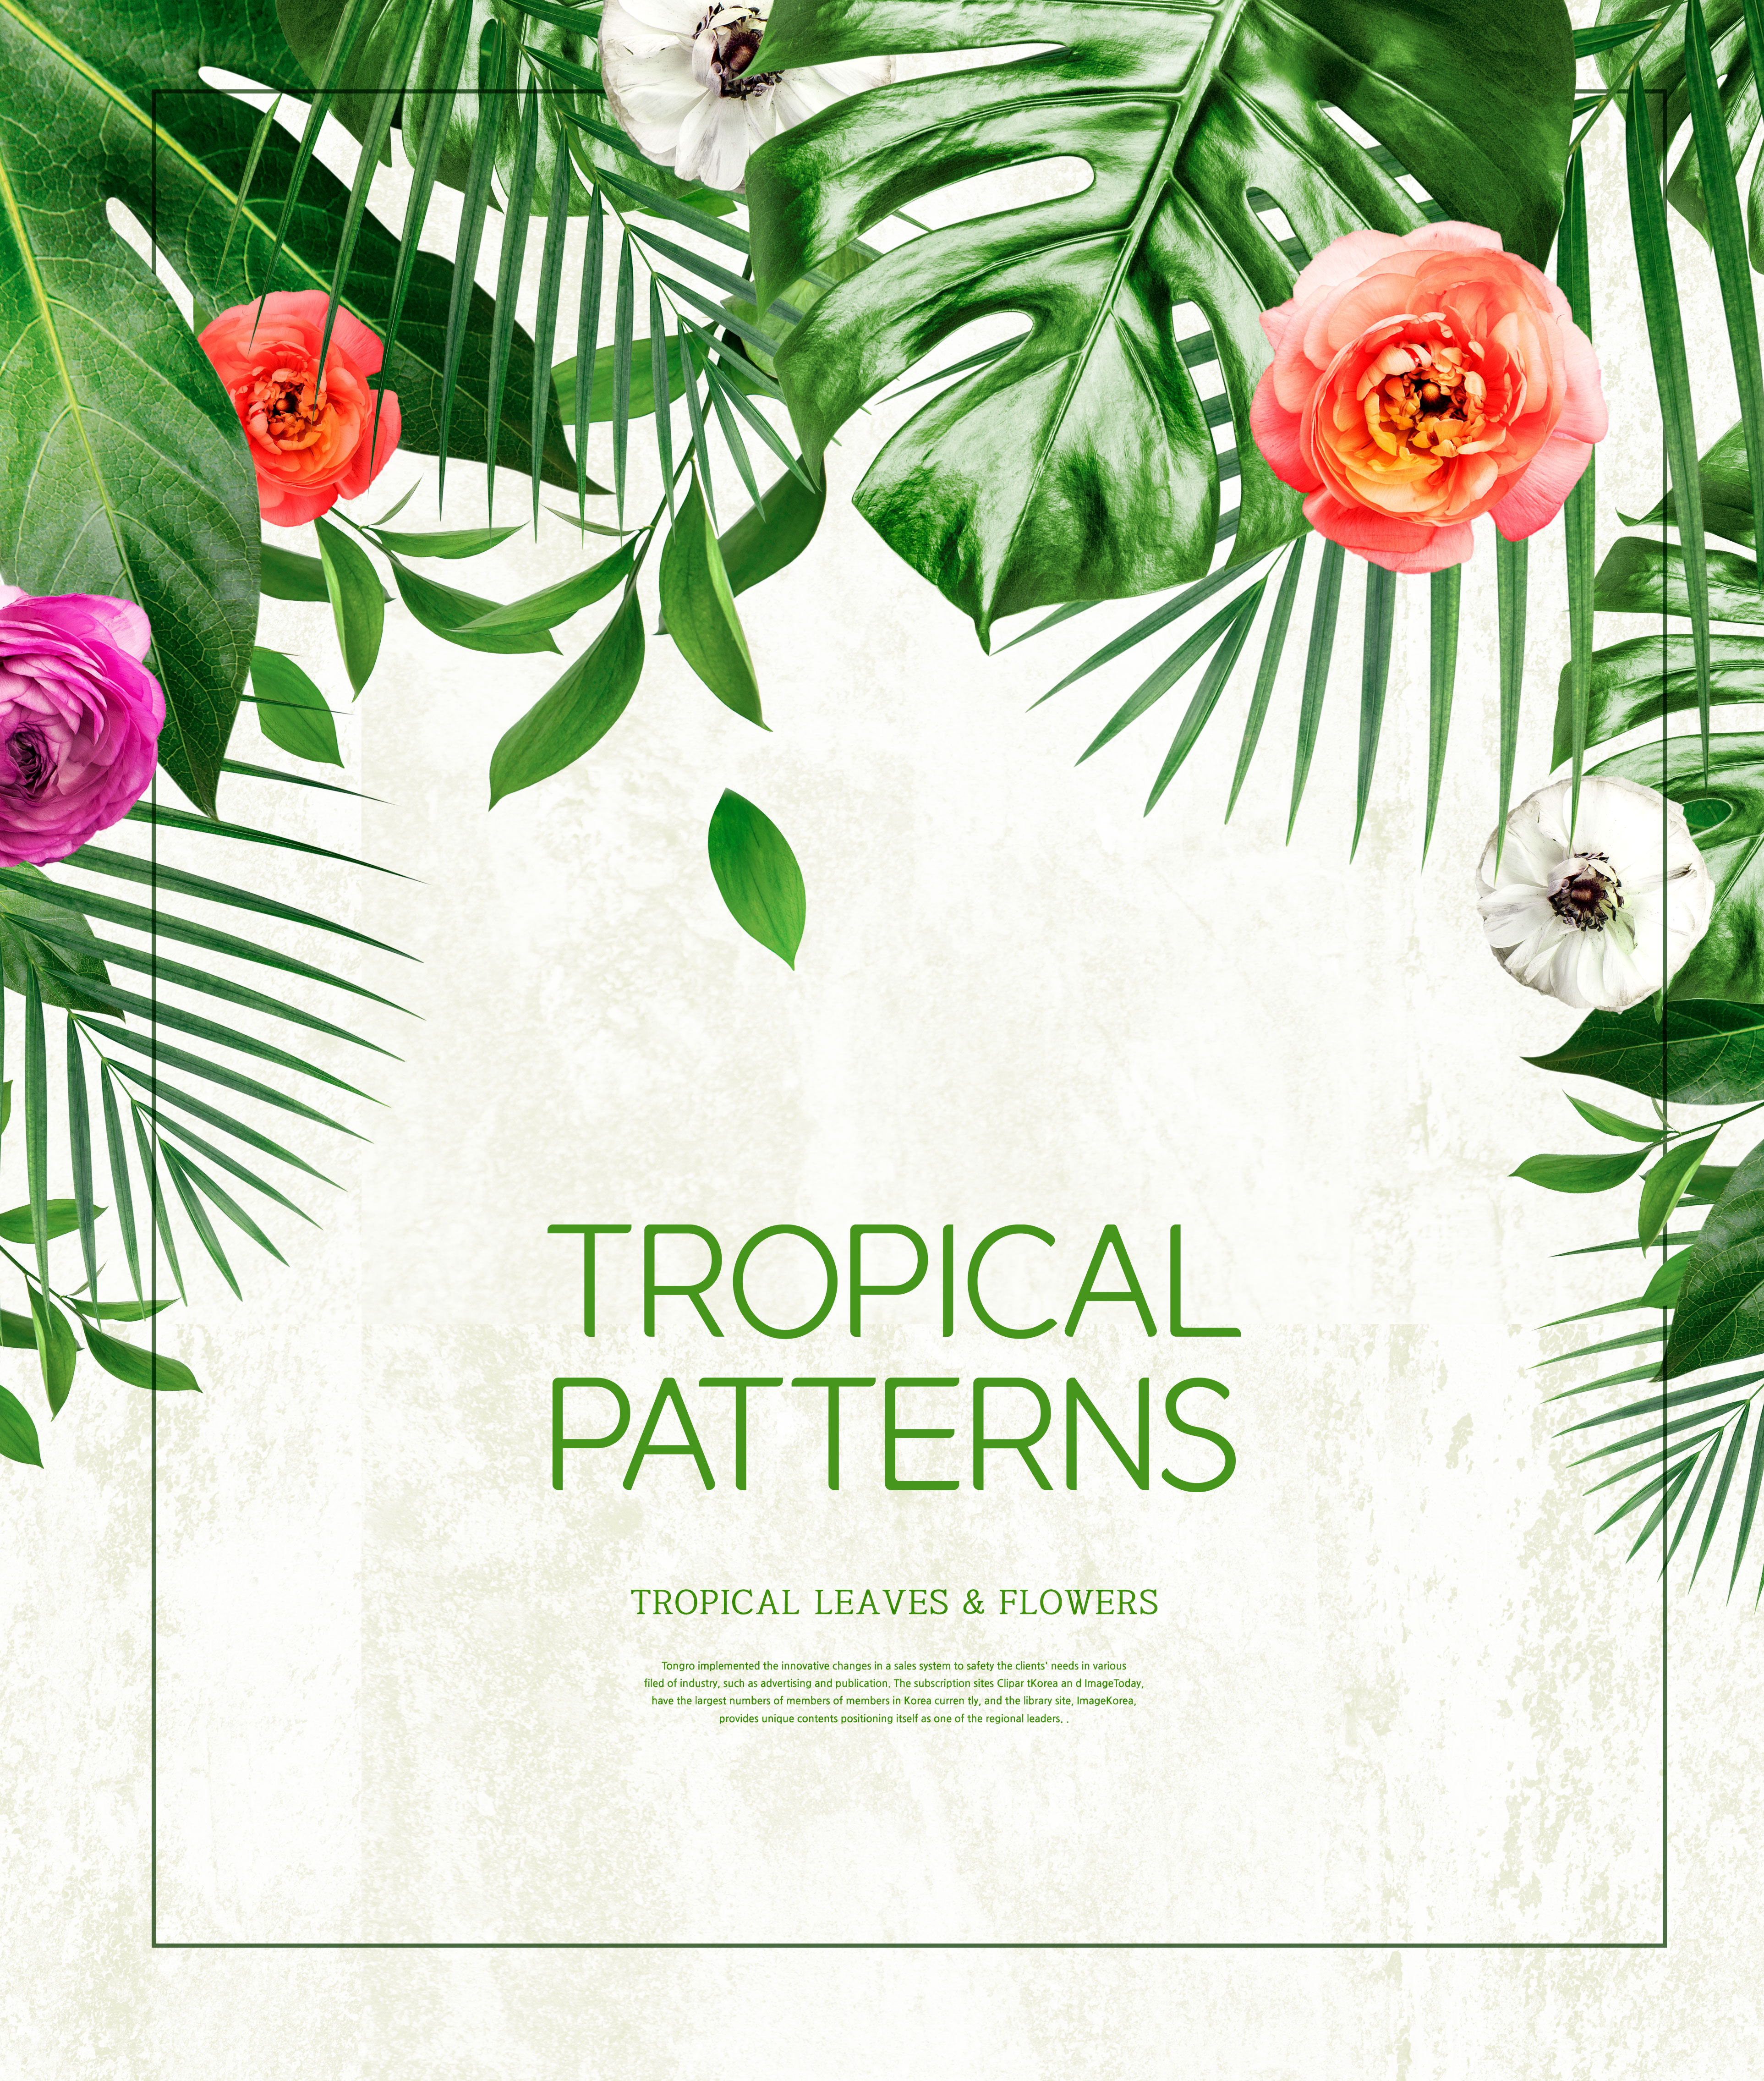 热带主题叶子&花卉图案海报设计素材插图(2)